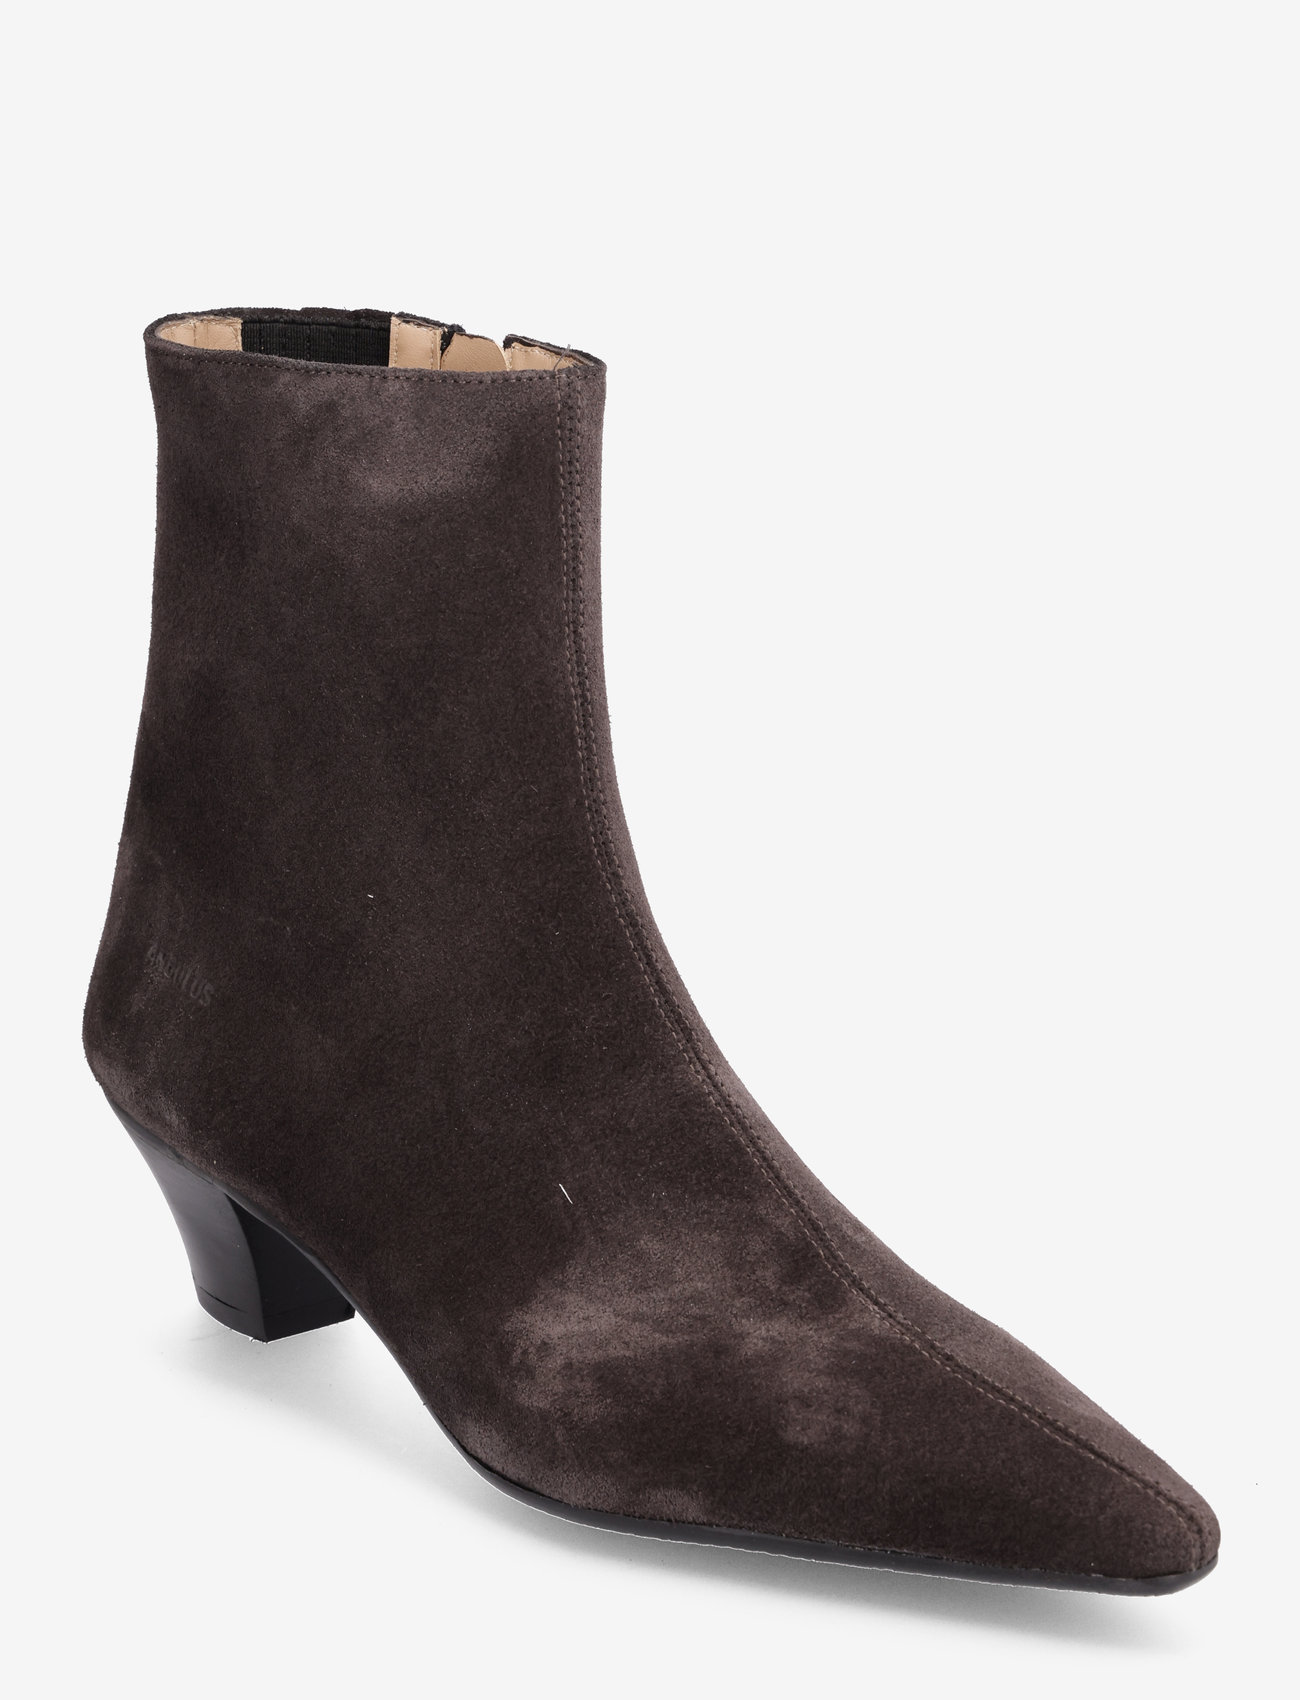 ANGULUS - Boots - Block heel with zipper - høye hæler - 1716/001 espresso - 0